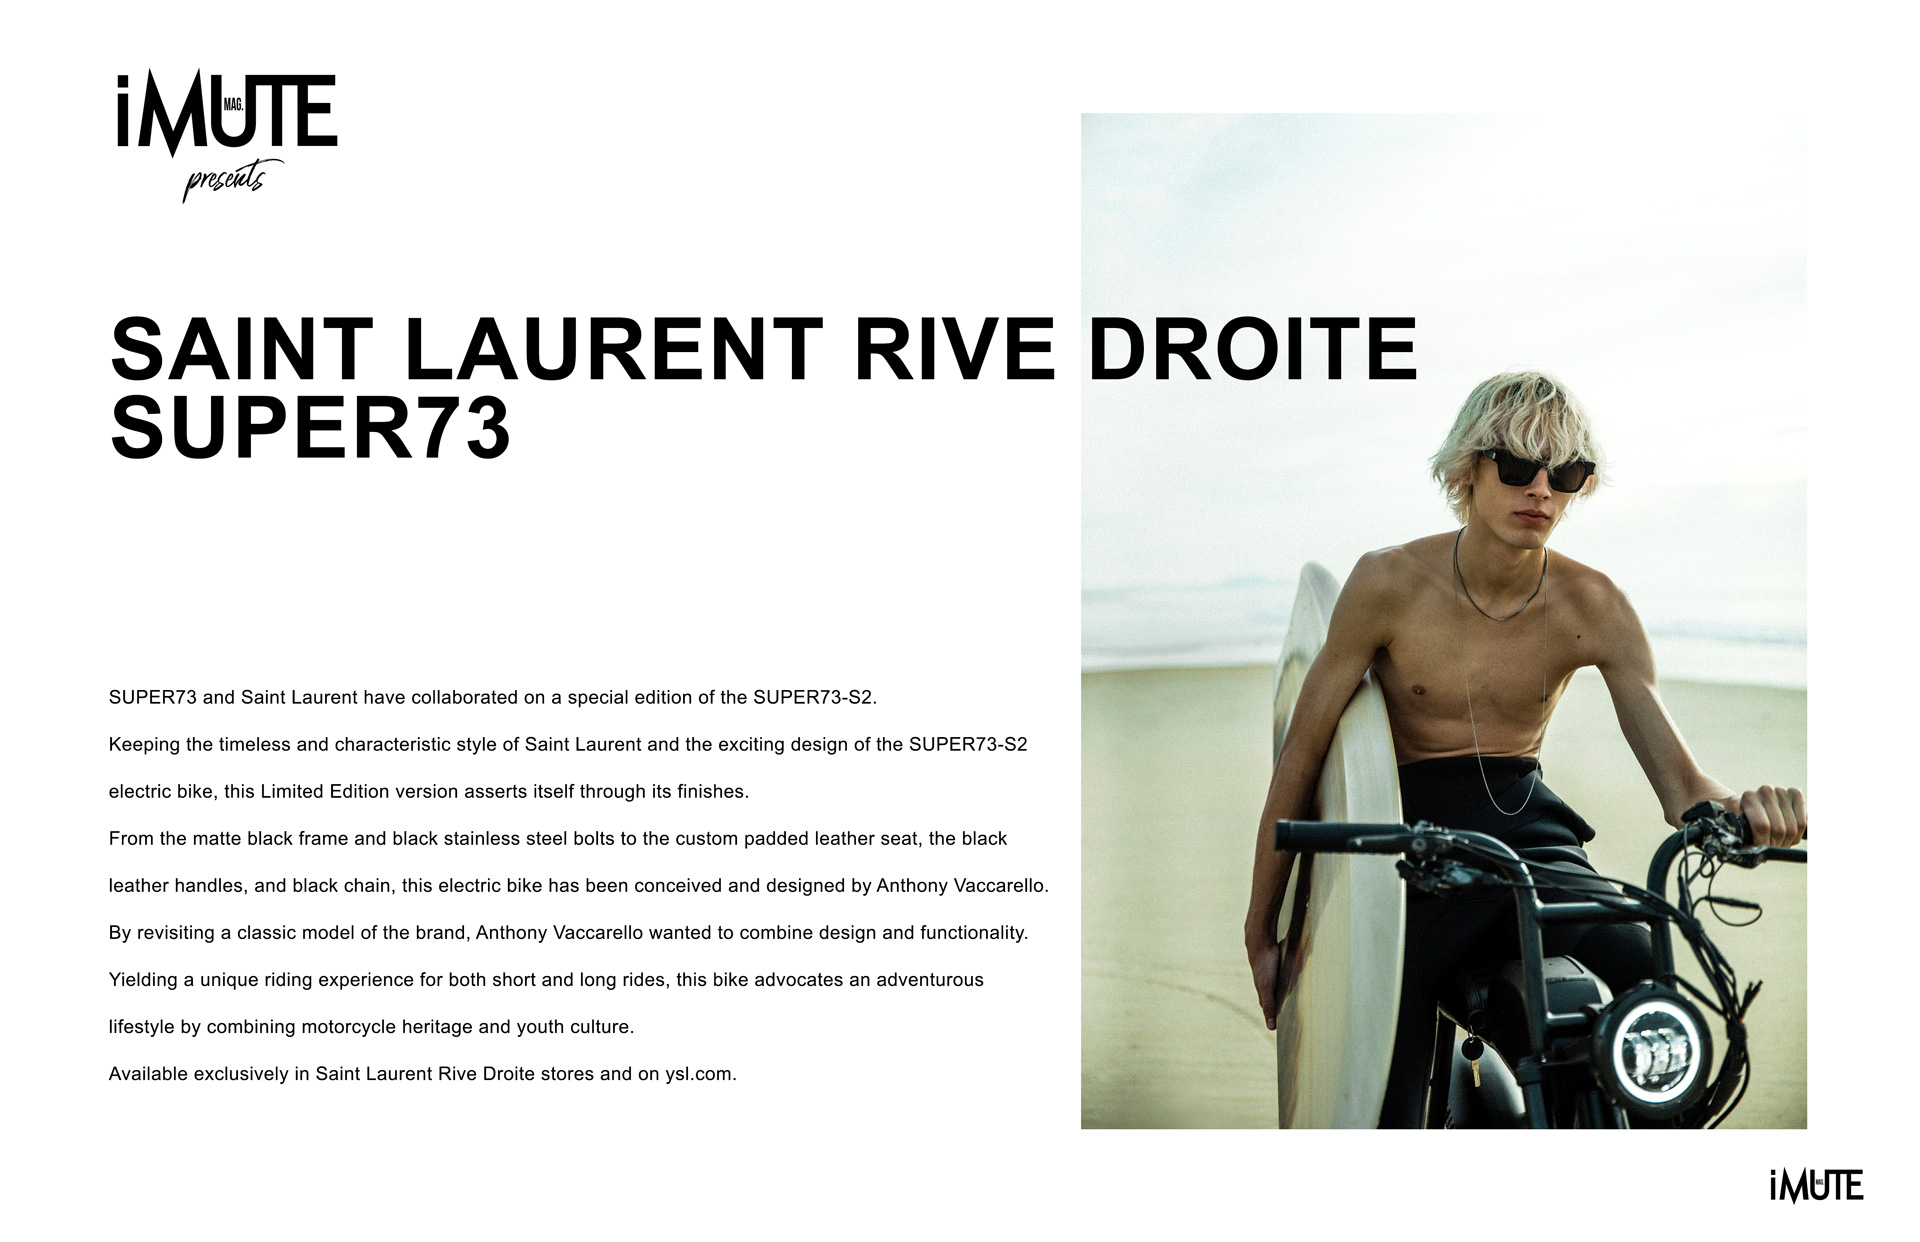 iMute Magazine presents SAINT LAURENT RIVE DROITE SUPER73